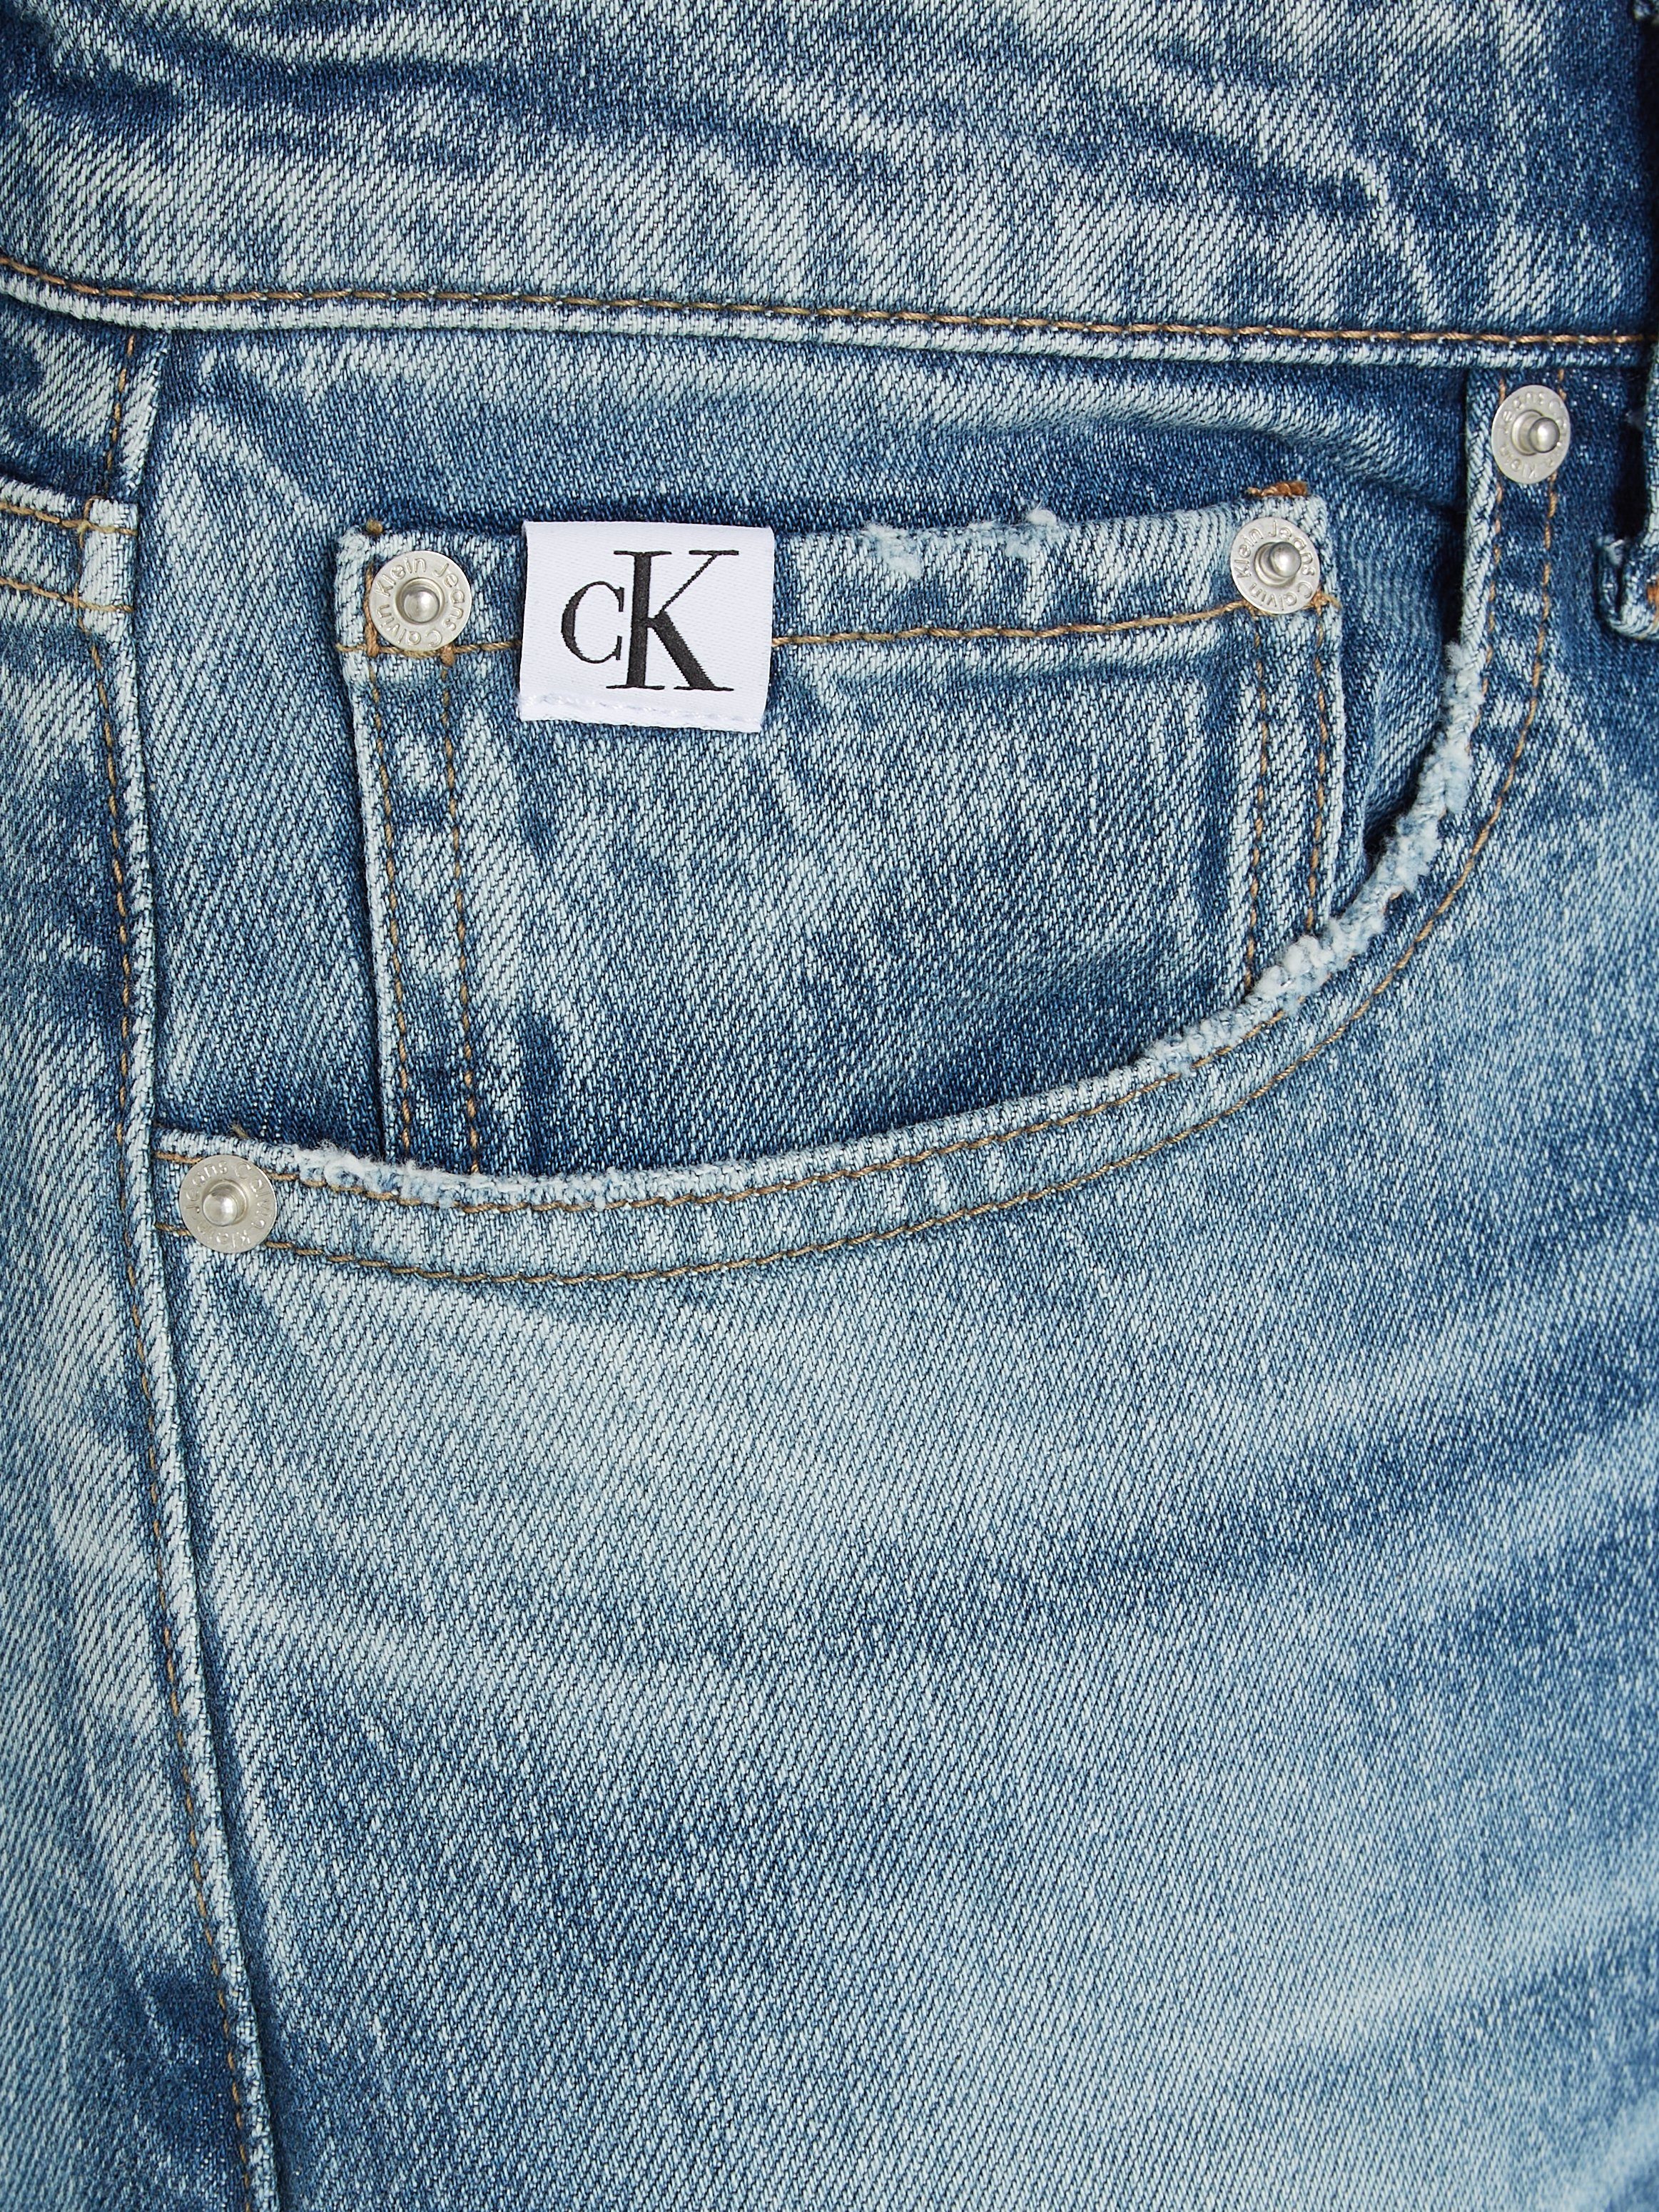 Leder-Badge mit TAPER 1A4 Denim SLIM Klein Jeans Tapered-fit-Jeans Calvin